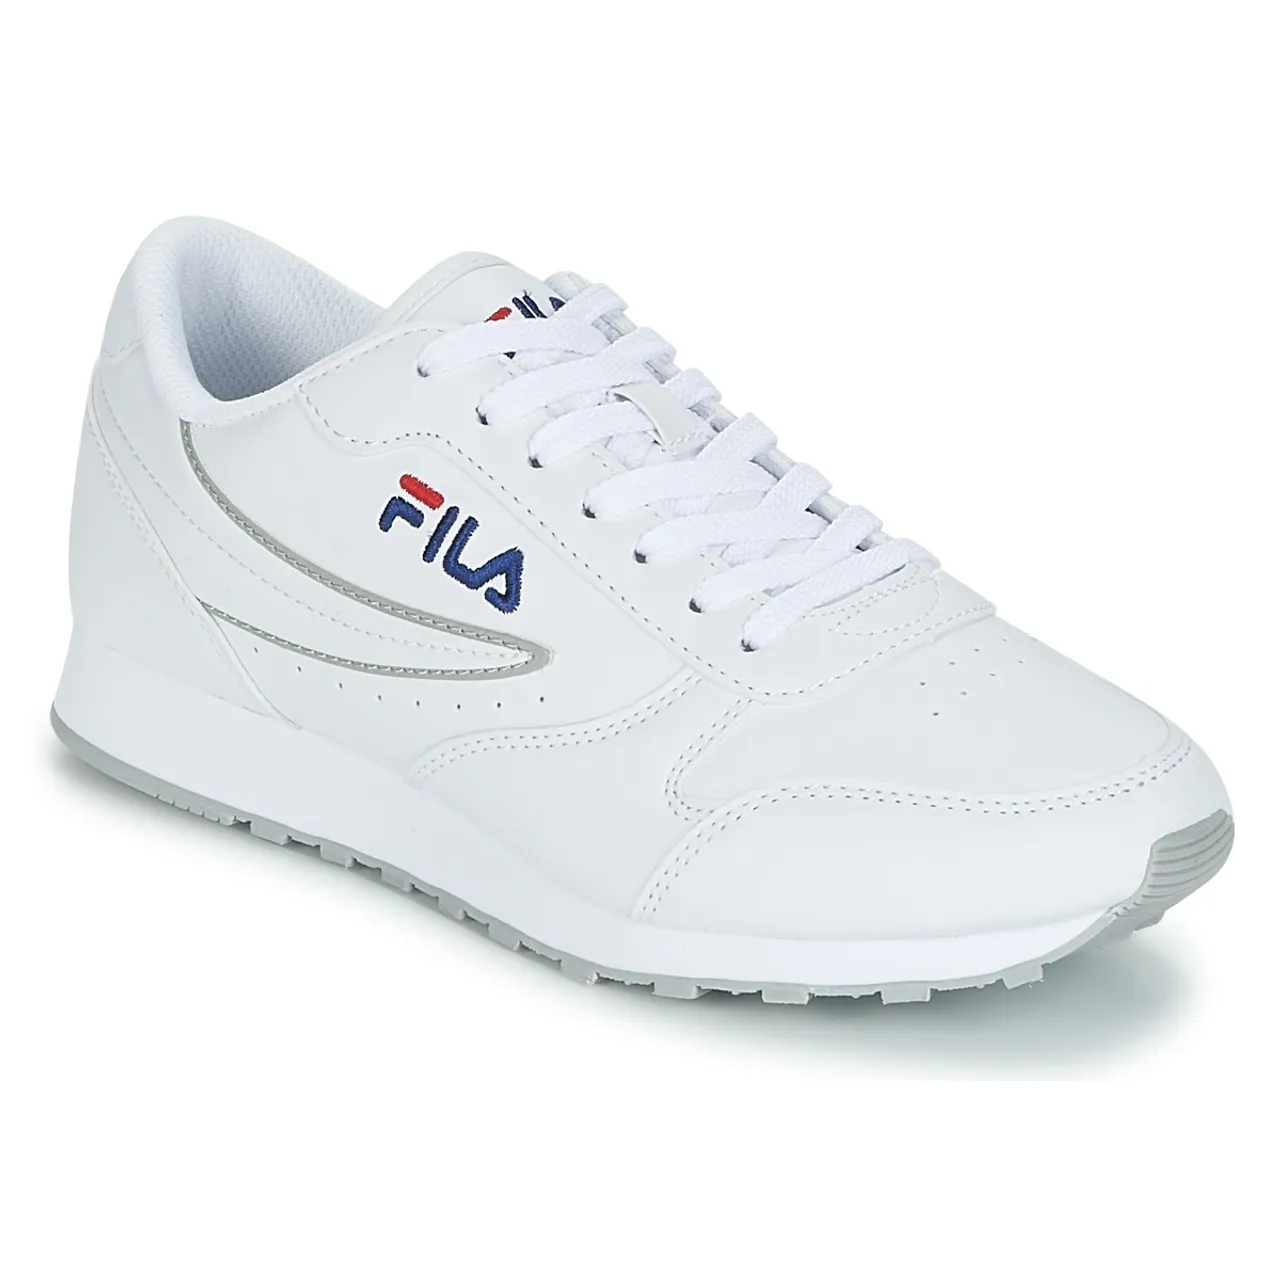 Fila  ORBIT LOW WMN  women's Shoes (Trainers) in White